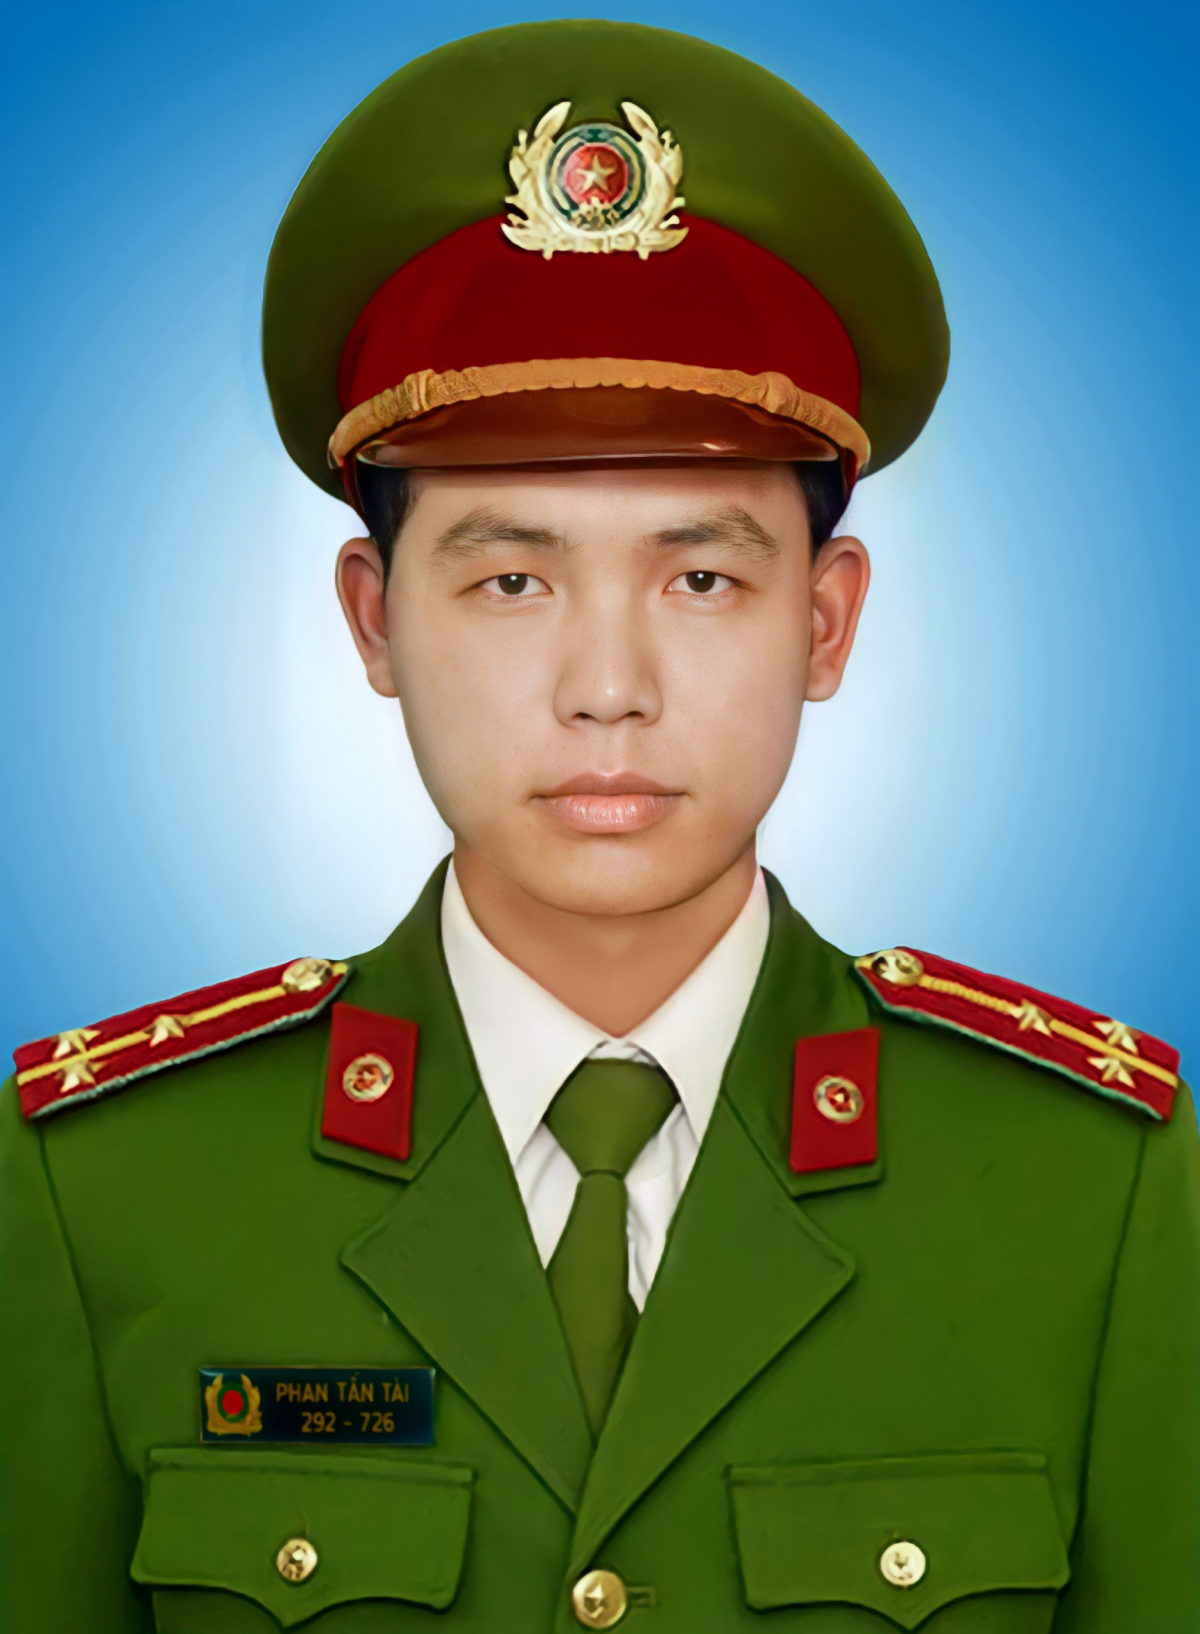 Thượng úy Phan Tấn Tài